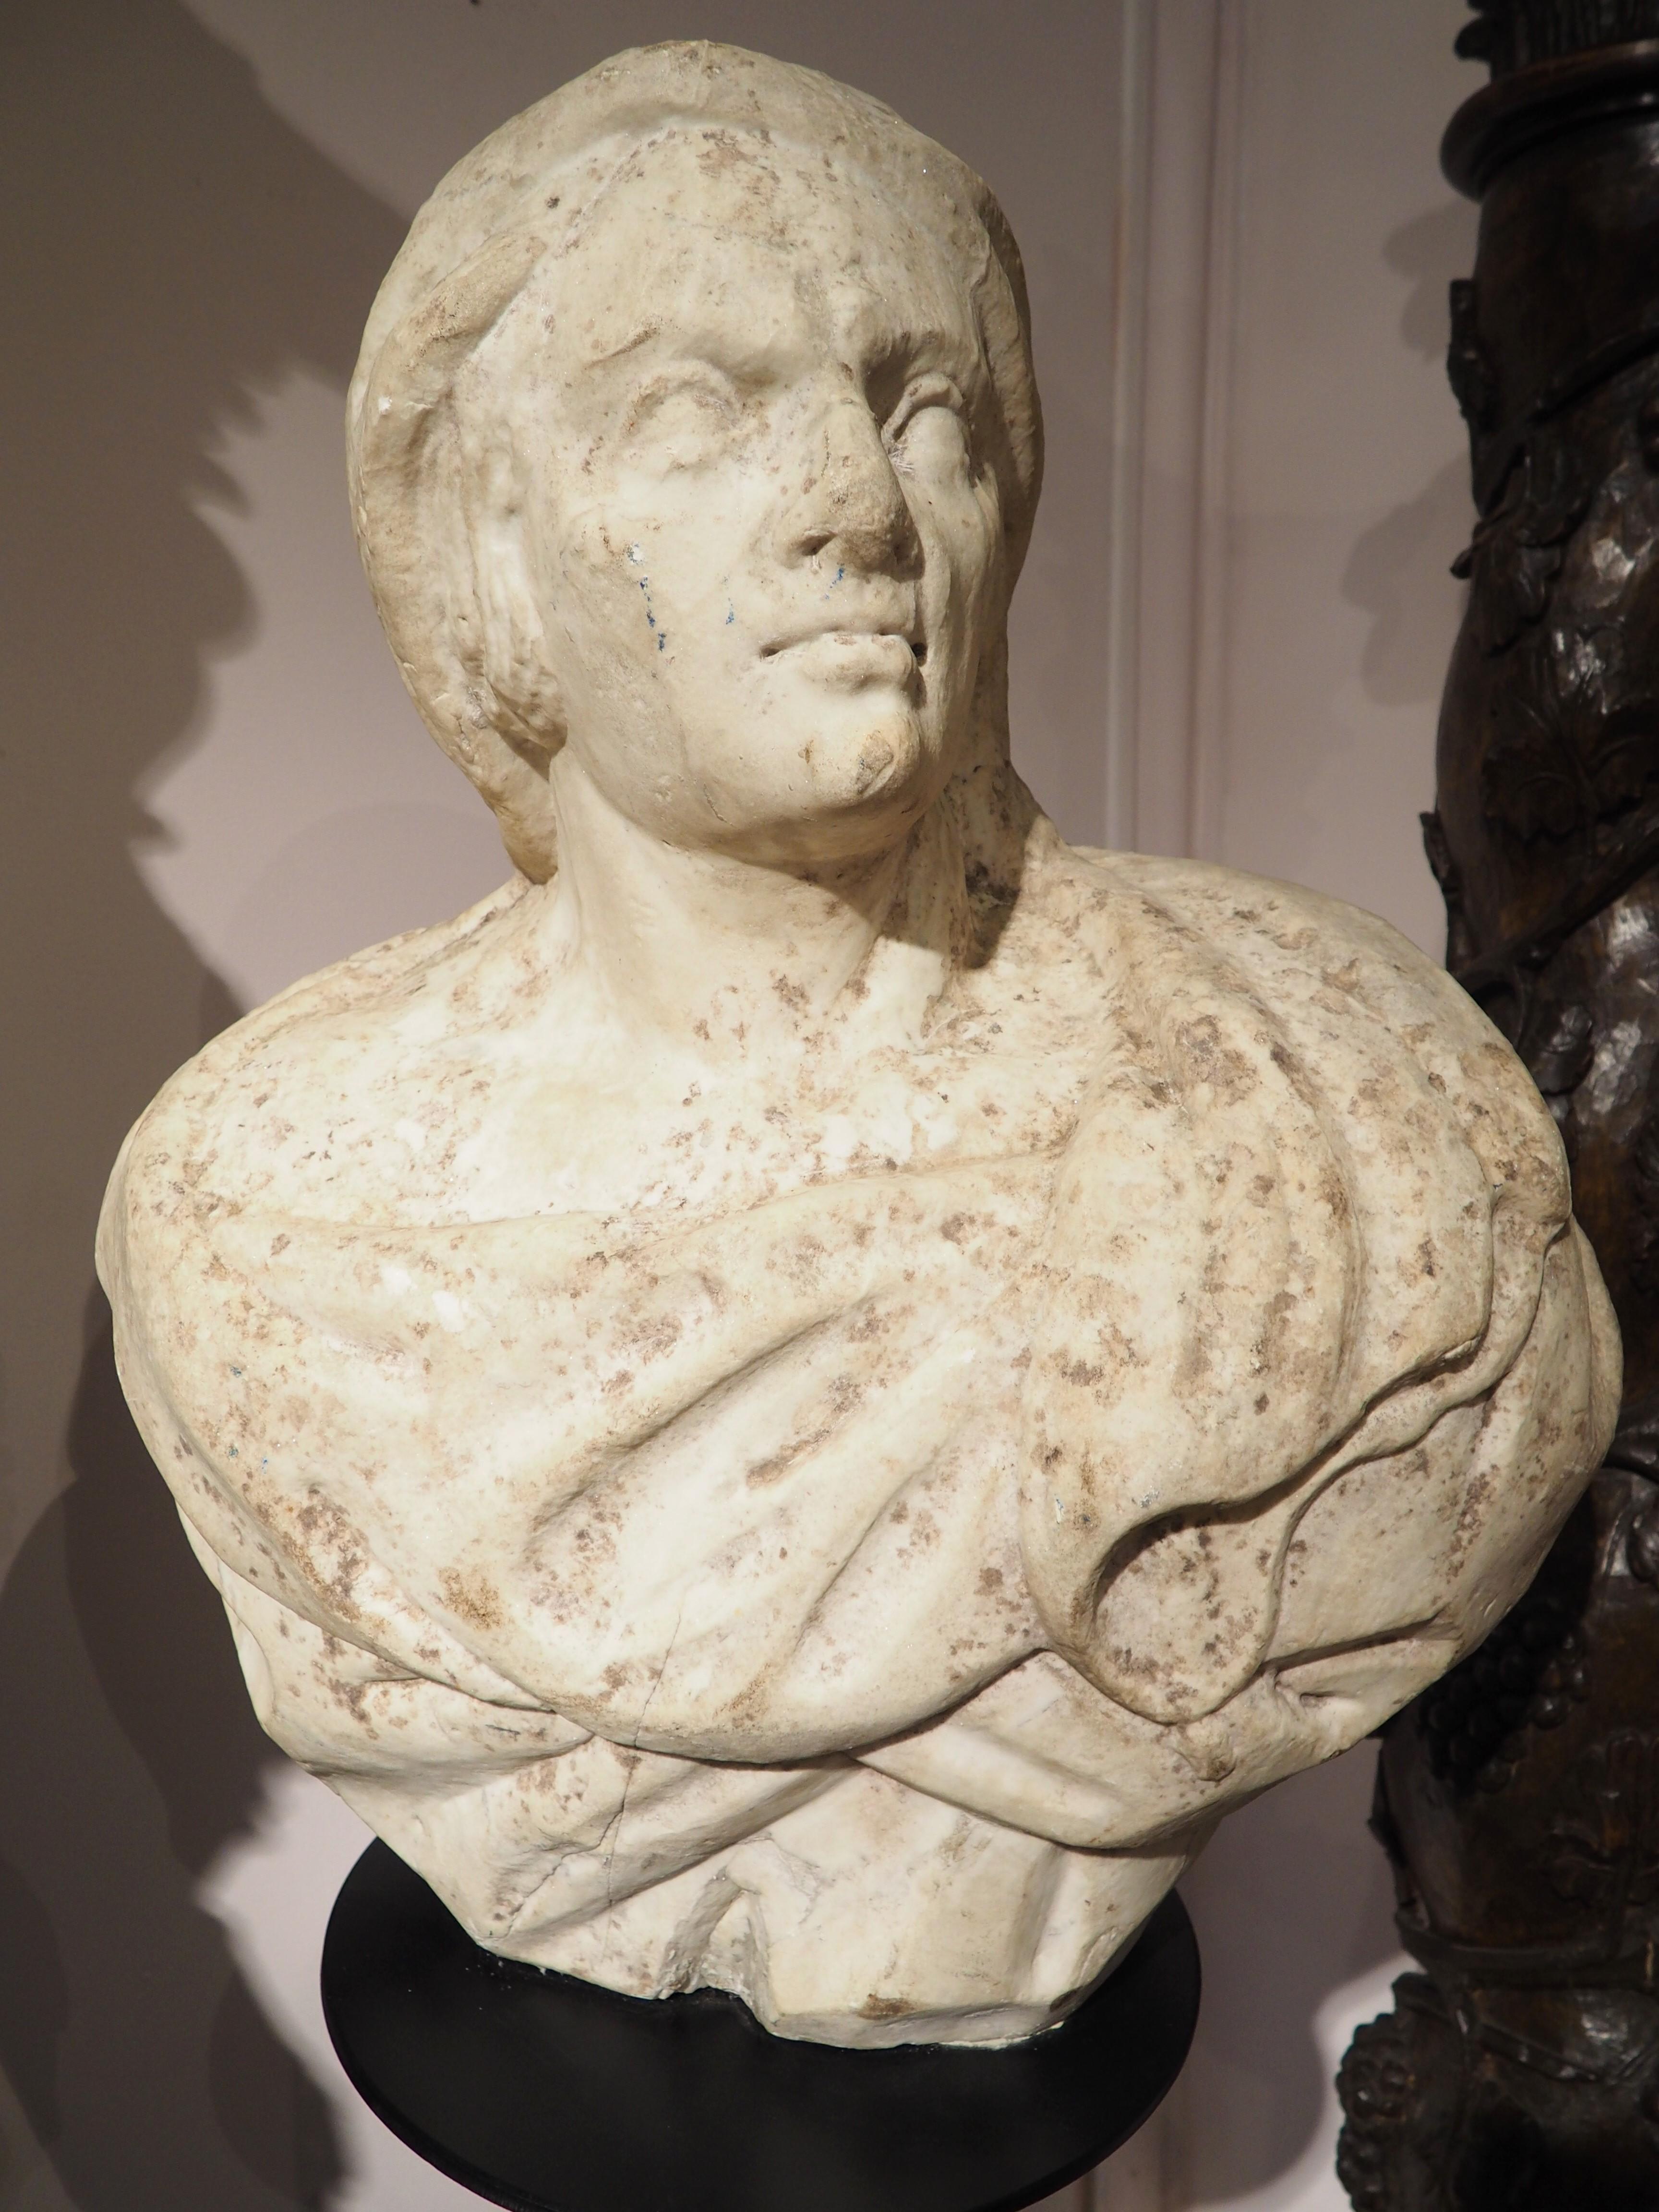 Récupéré dans une villa de la côte d'Amalfi, dans le sud de l'Italie, ce magnifique buste en marbre a été sculpté à la main dans les années 1600. Notre sujet a un manteau enroulé autour de ses épaules et est représenté regardant légèrement vers la